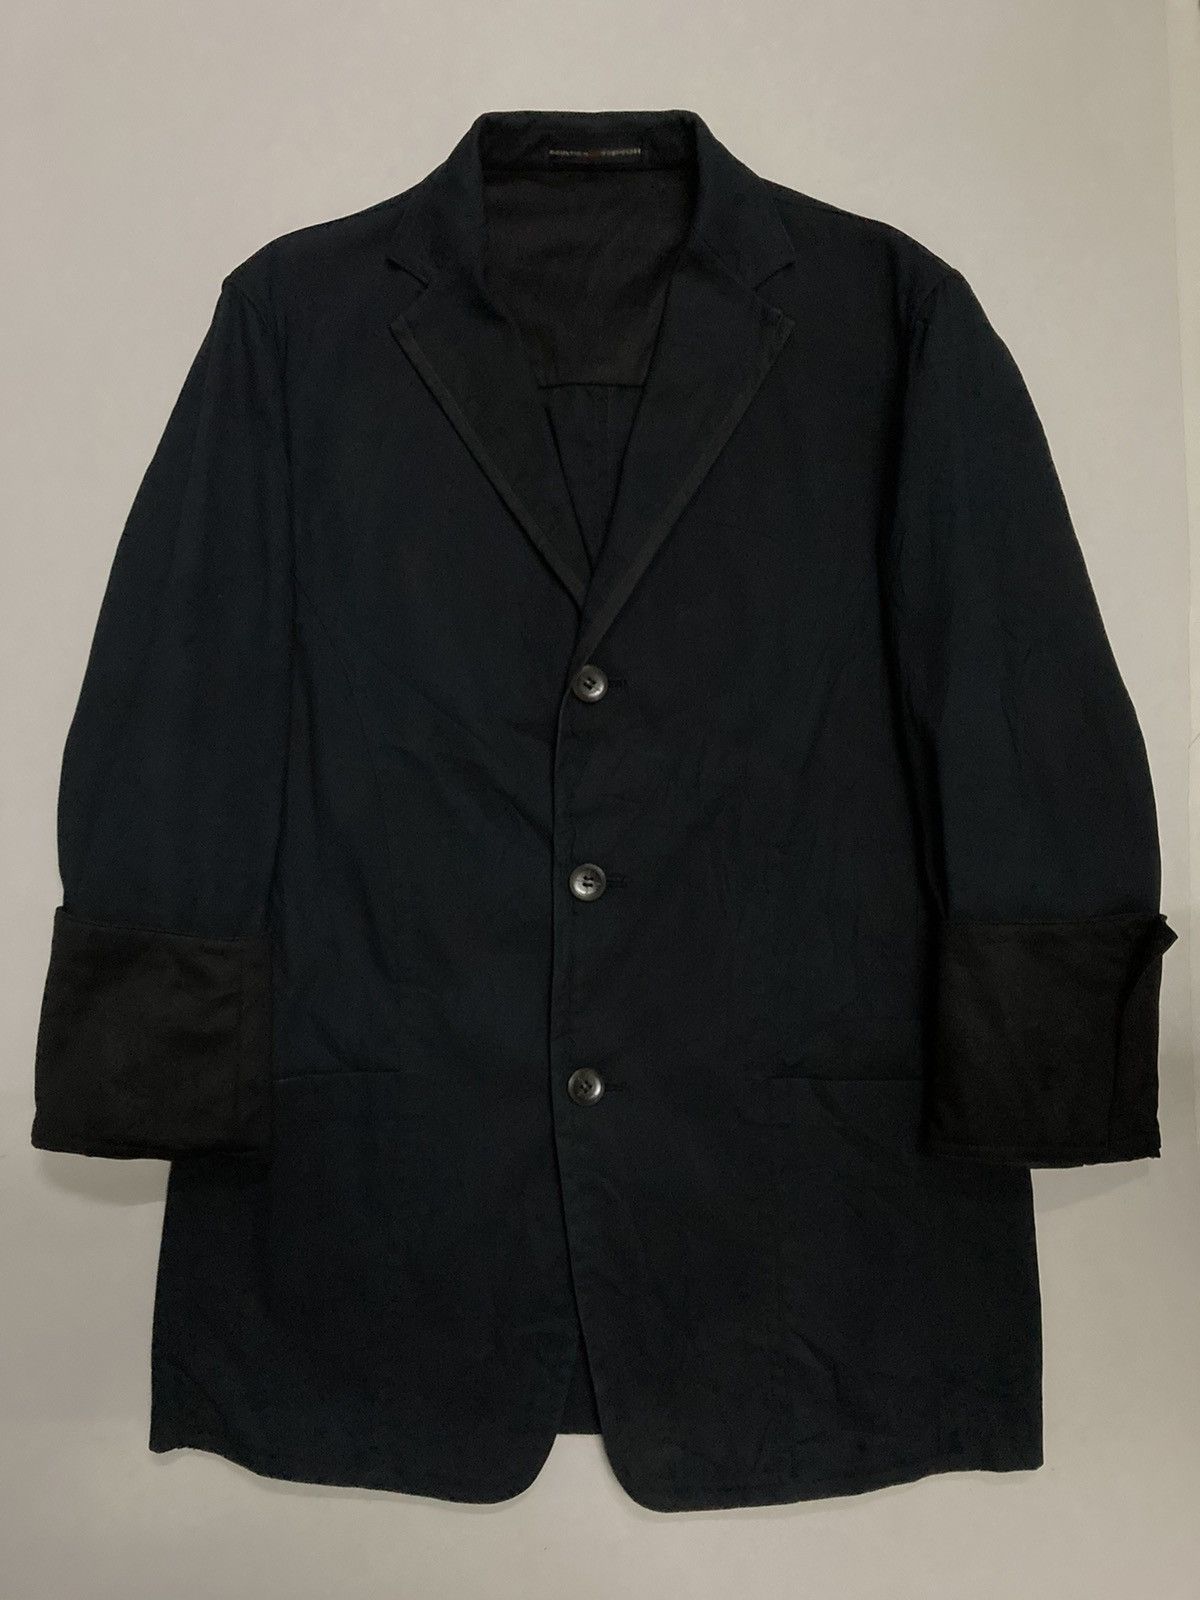 Vintage Gaultier Homme Objet Blazer Jacket - 5